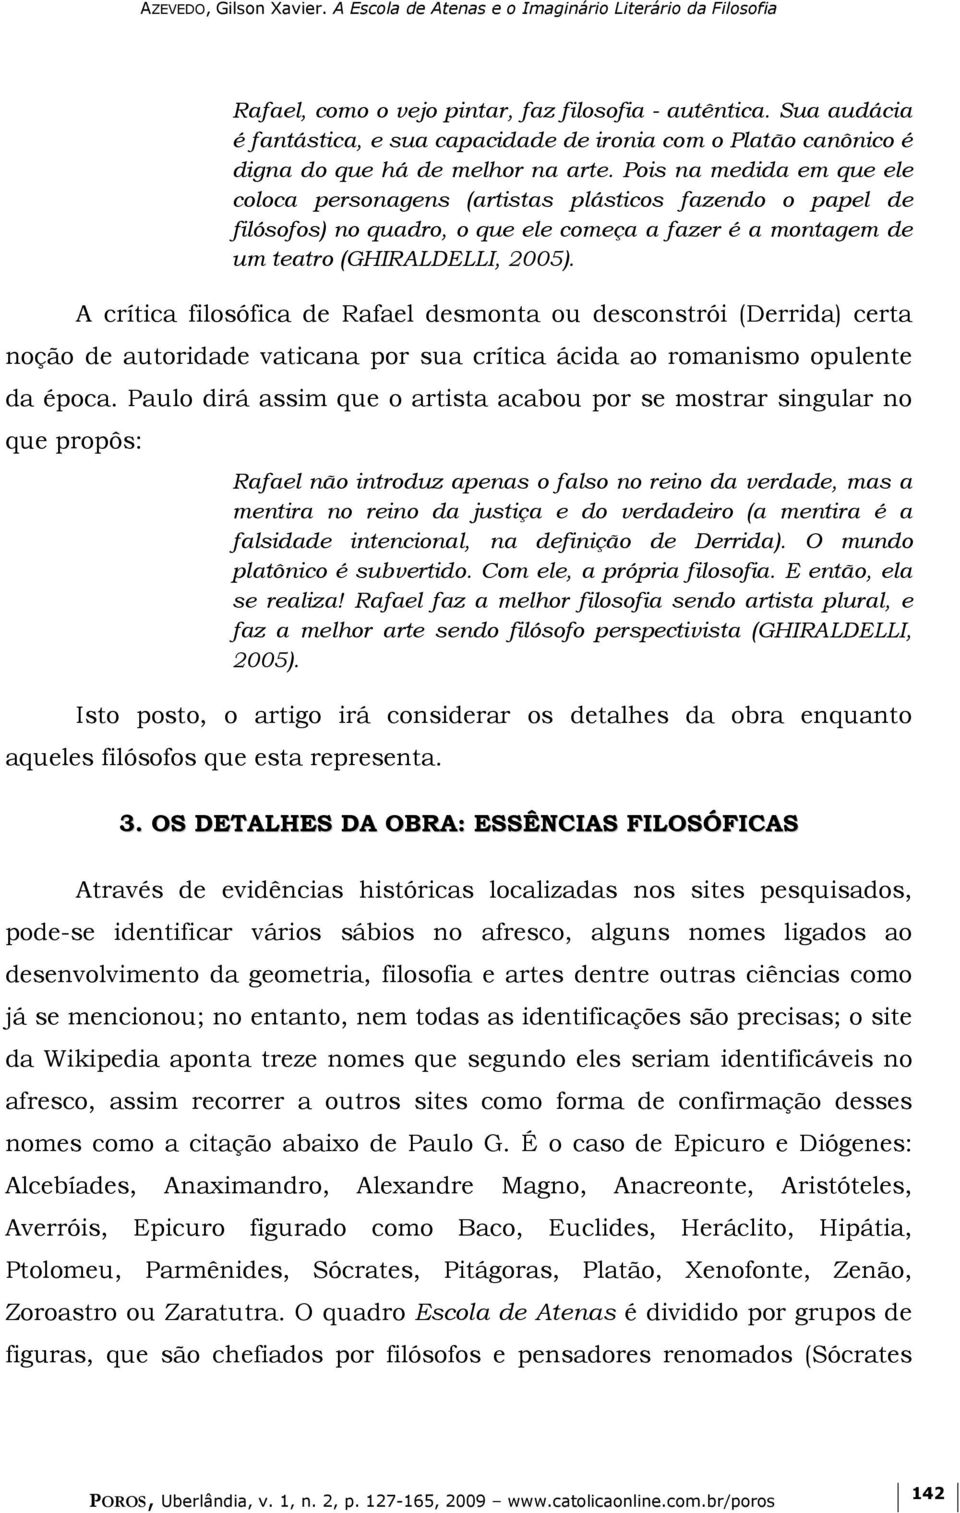 A crítica filosófica de Rafael desmonta ou desconstrói (Derrida) certa noção de autoridade vaticana por sua crítica ácida ao romanismo opulente da época.